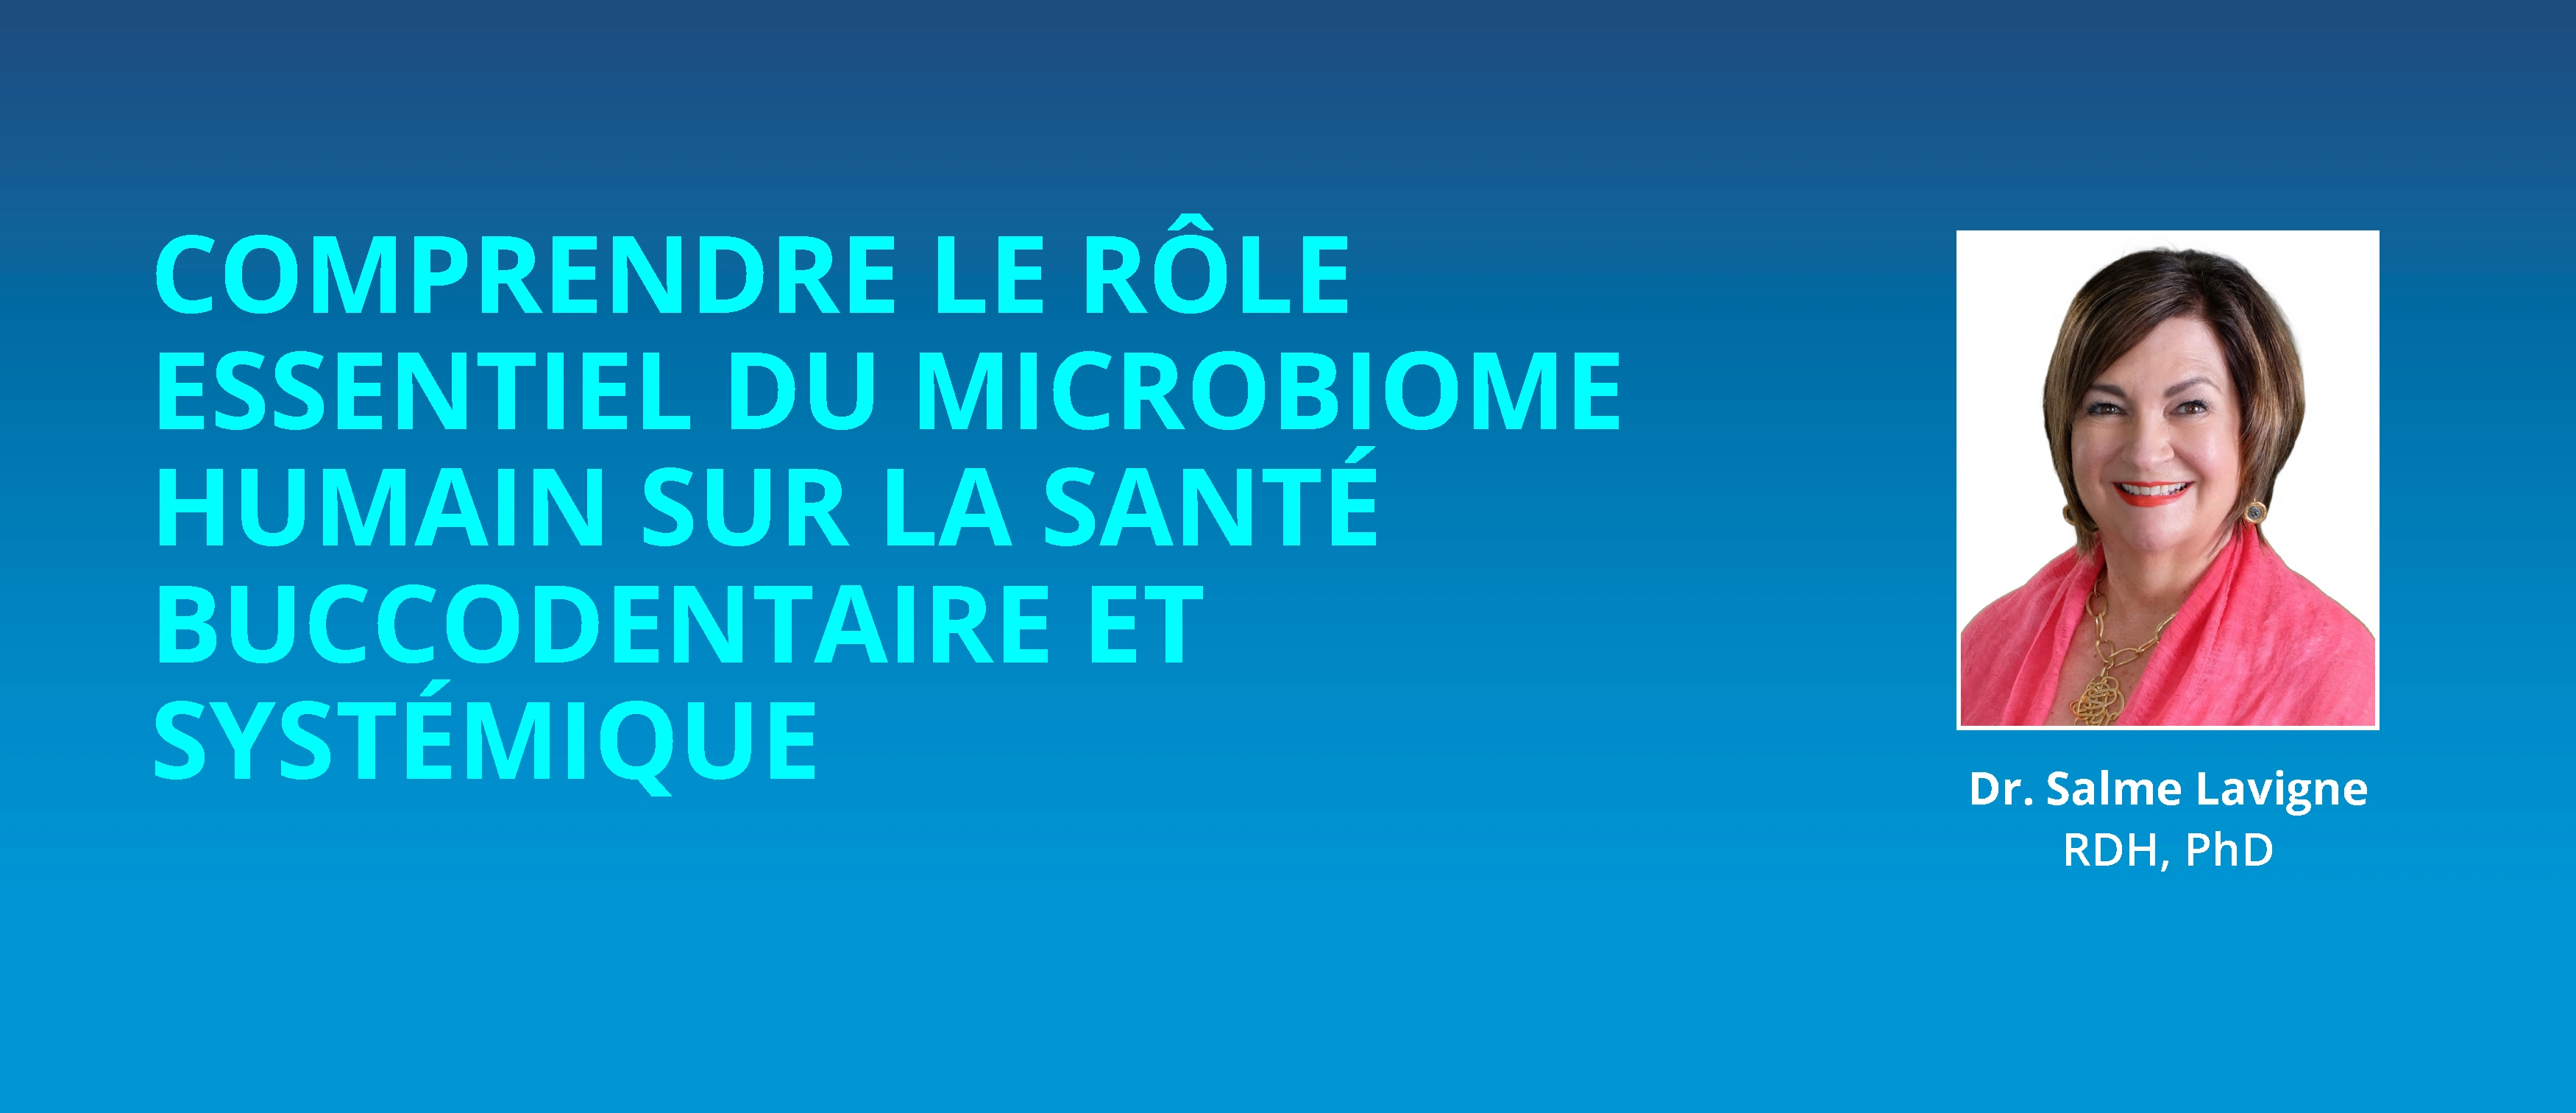 Comprendre Le Rôle Essentiel Du Microbiome Humain Sur La Santé Buccodentaire Et Systémique